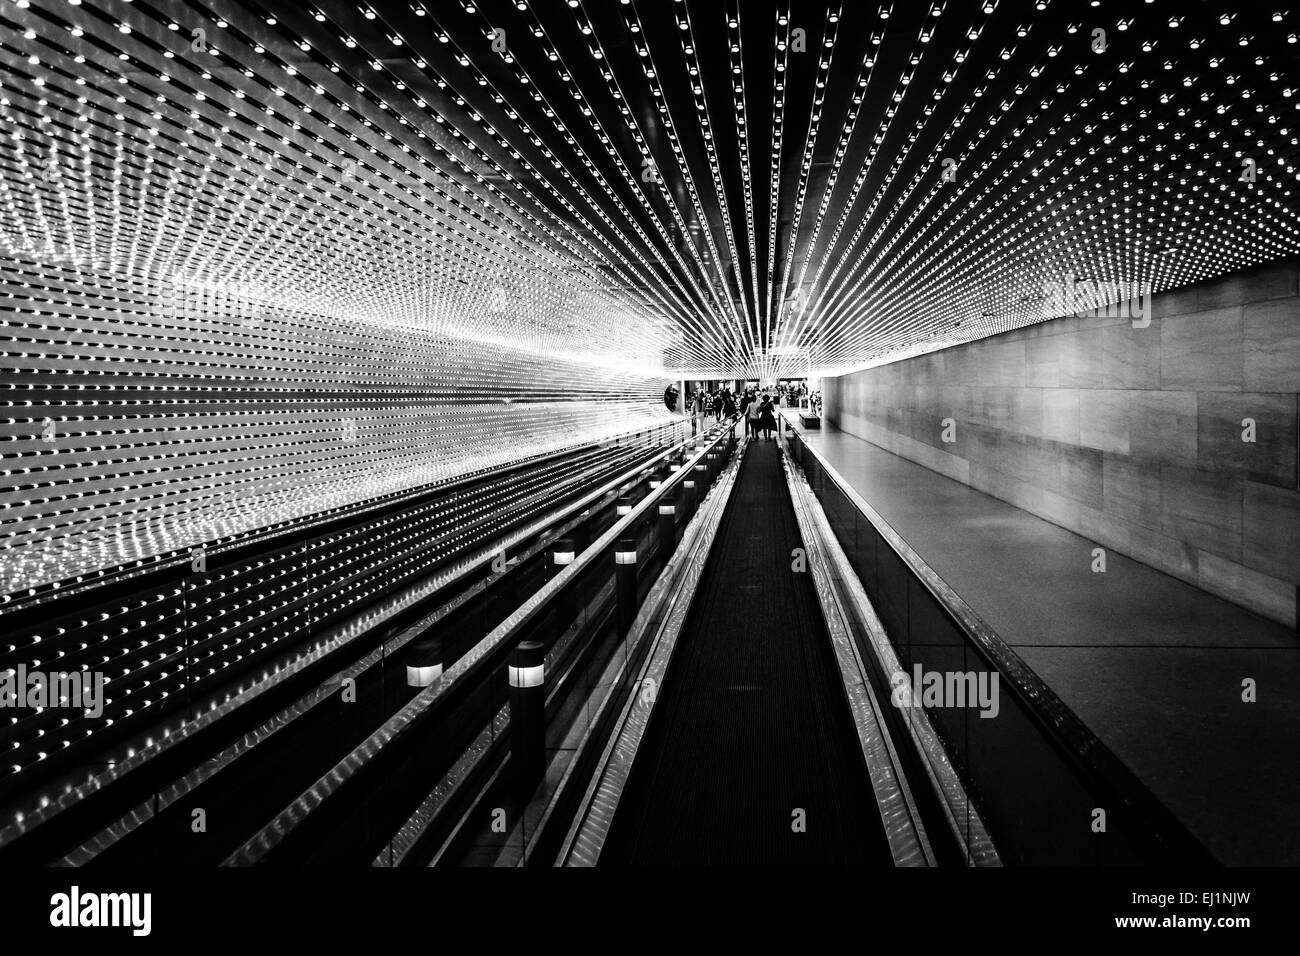 Tapis roulant souterrain à la National Gallery of Art, à Washington, DC. Banque D'Images